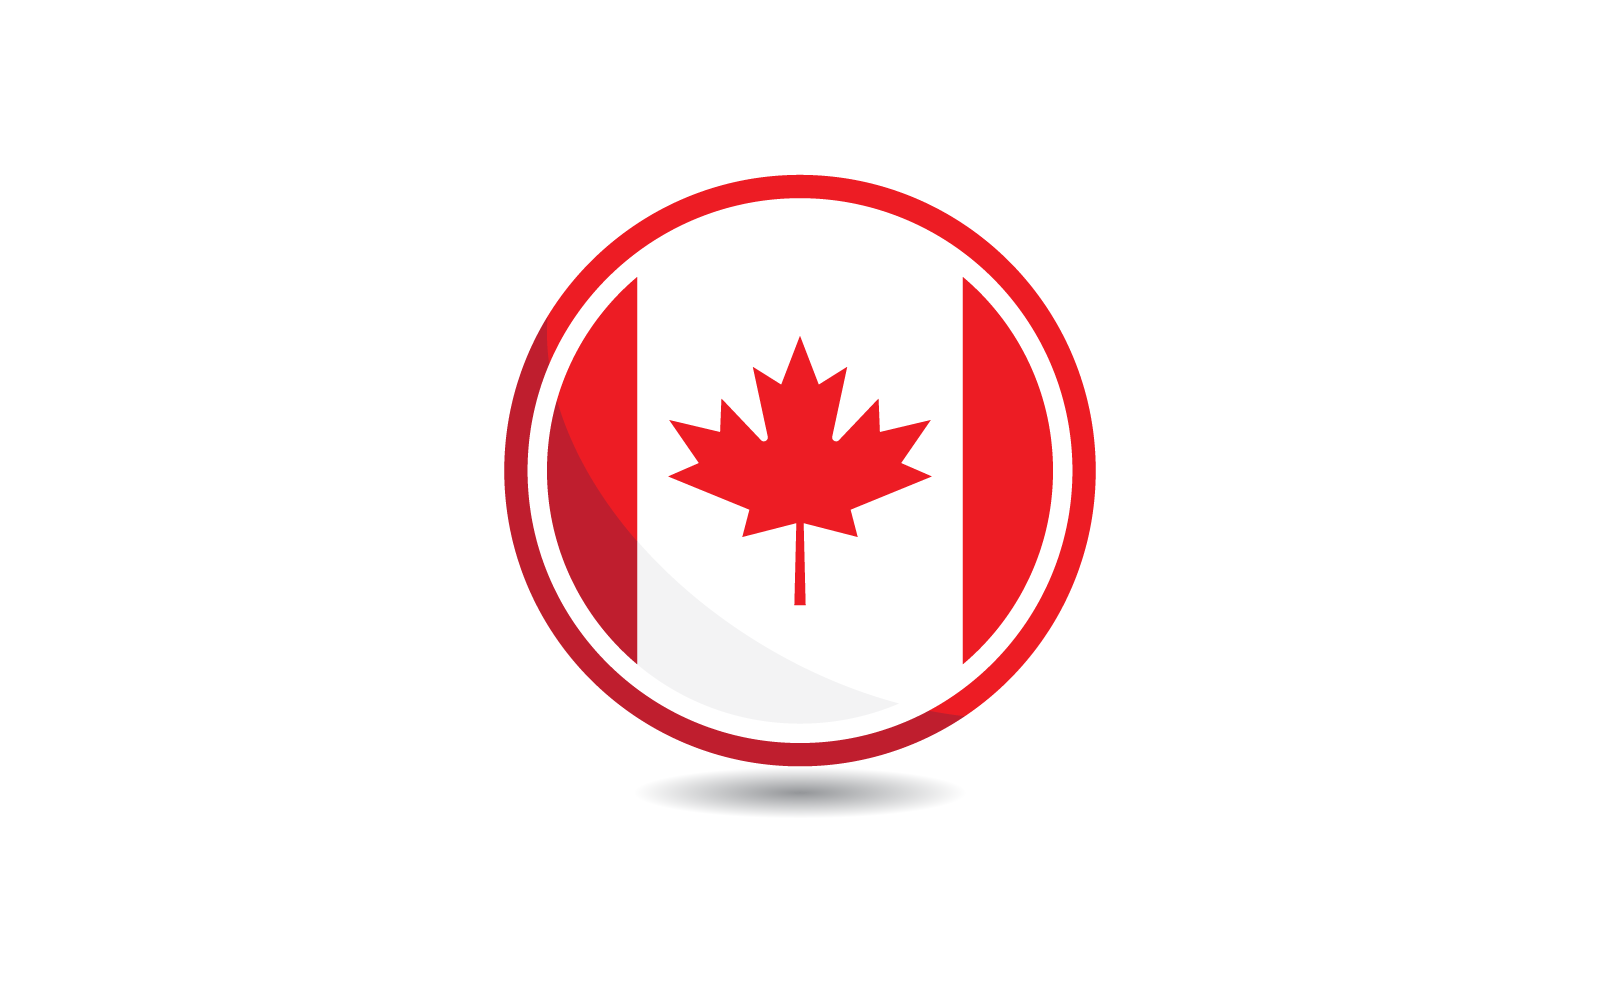 vetor de design plano de ilustração de bandeira do Canadá